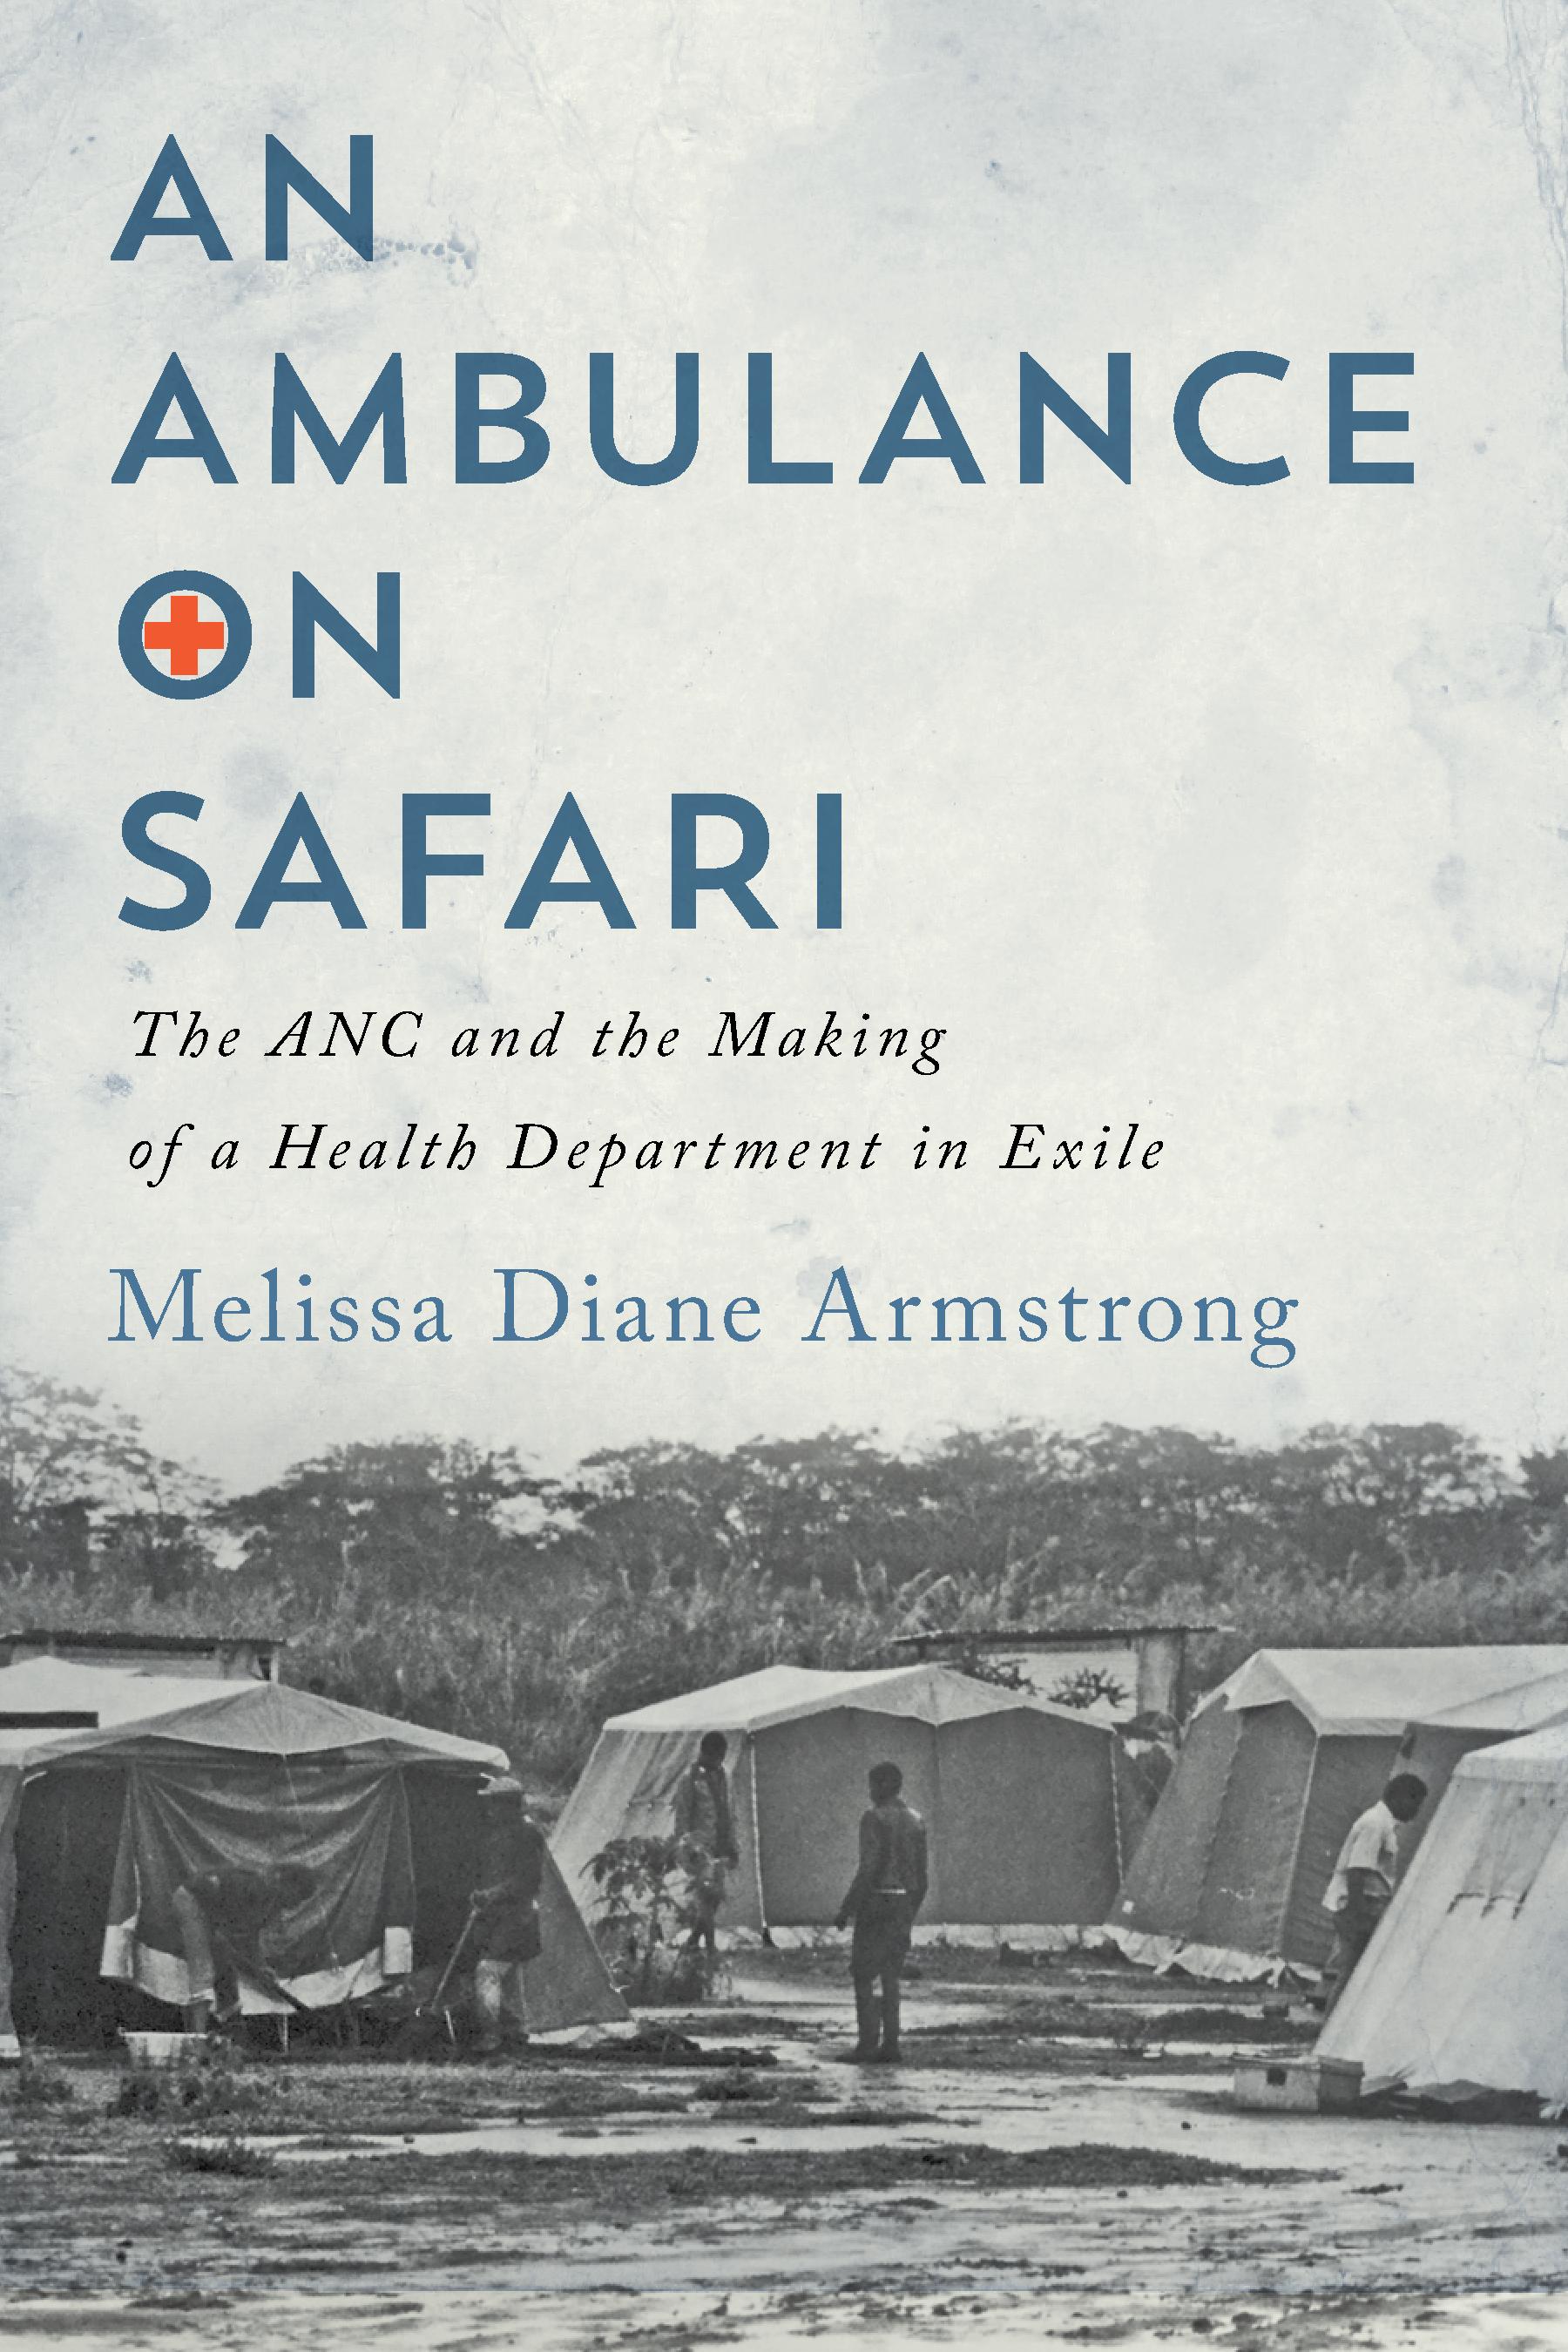 An Ambulance on Safari.